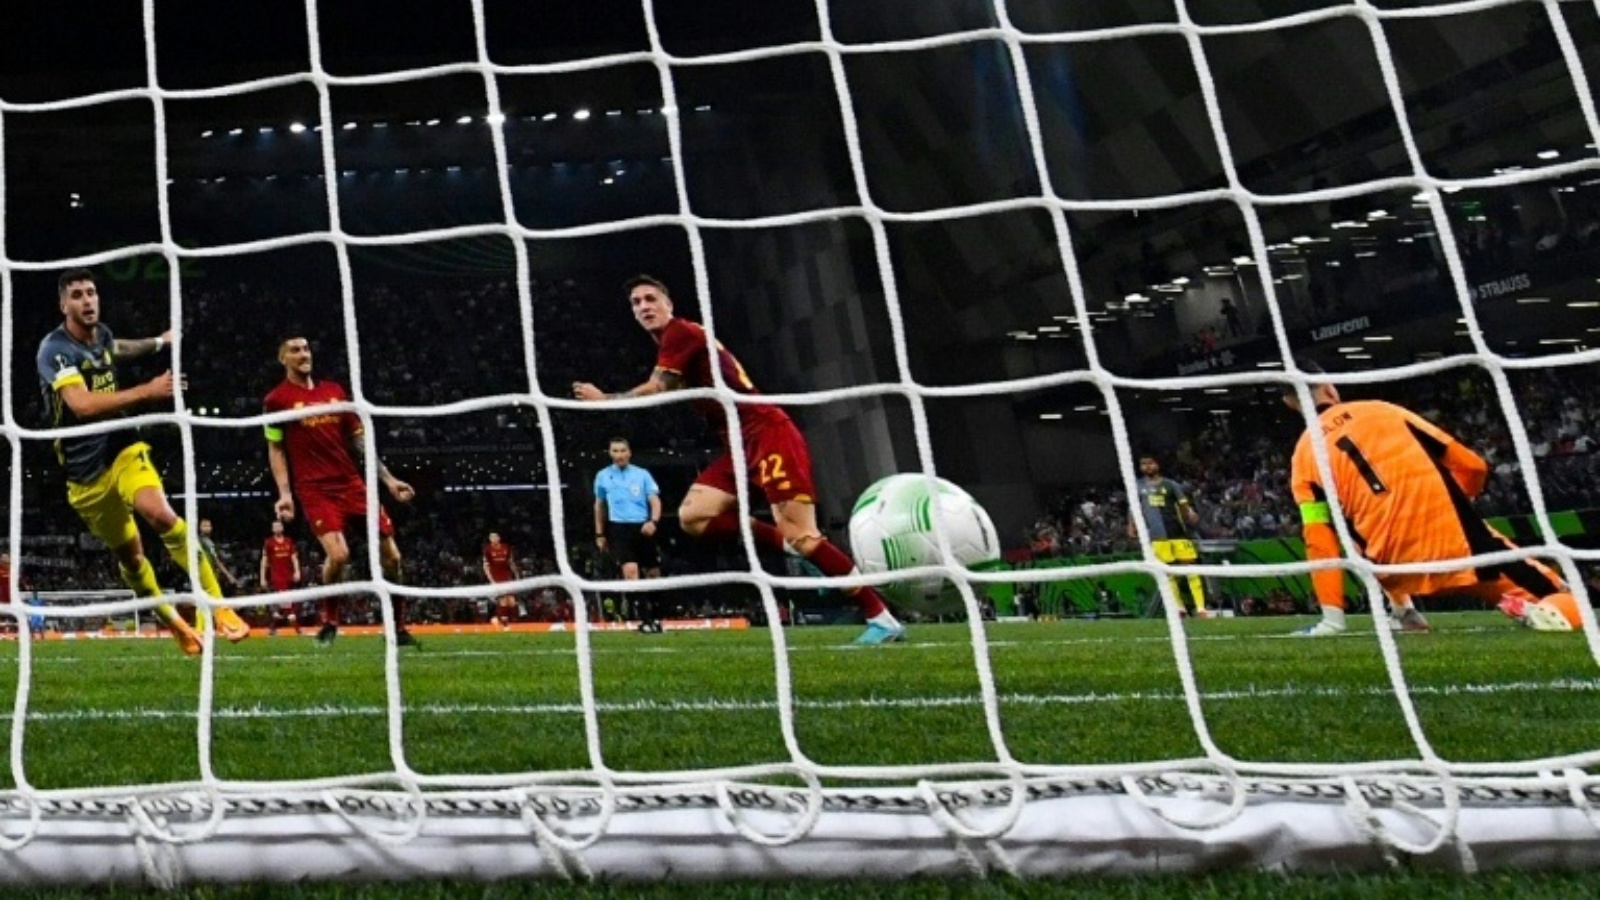 سجل نيكولو زانيولو هدف الفوز لروما بلقب مسابقة كونفرنس ليغ في الموسم الماضي